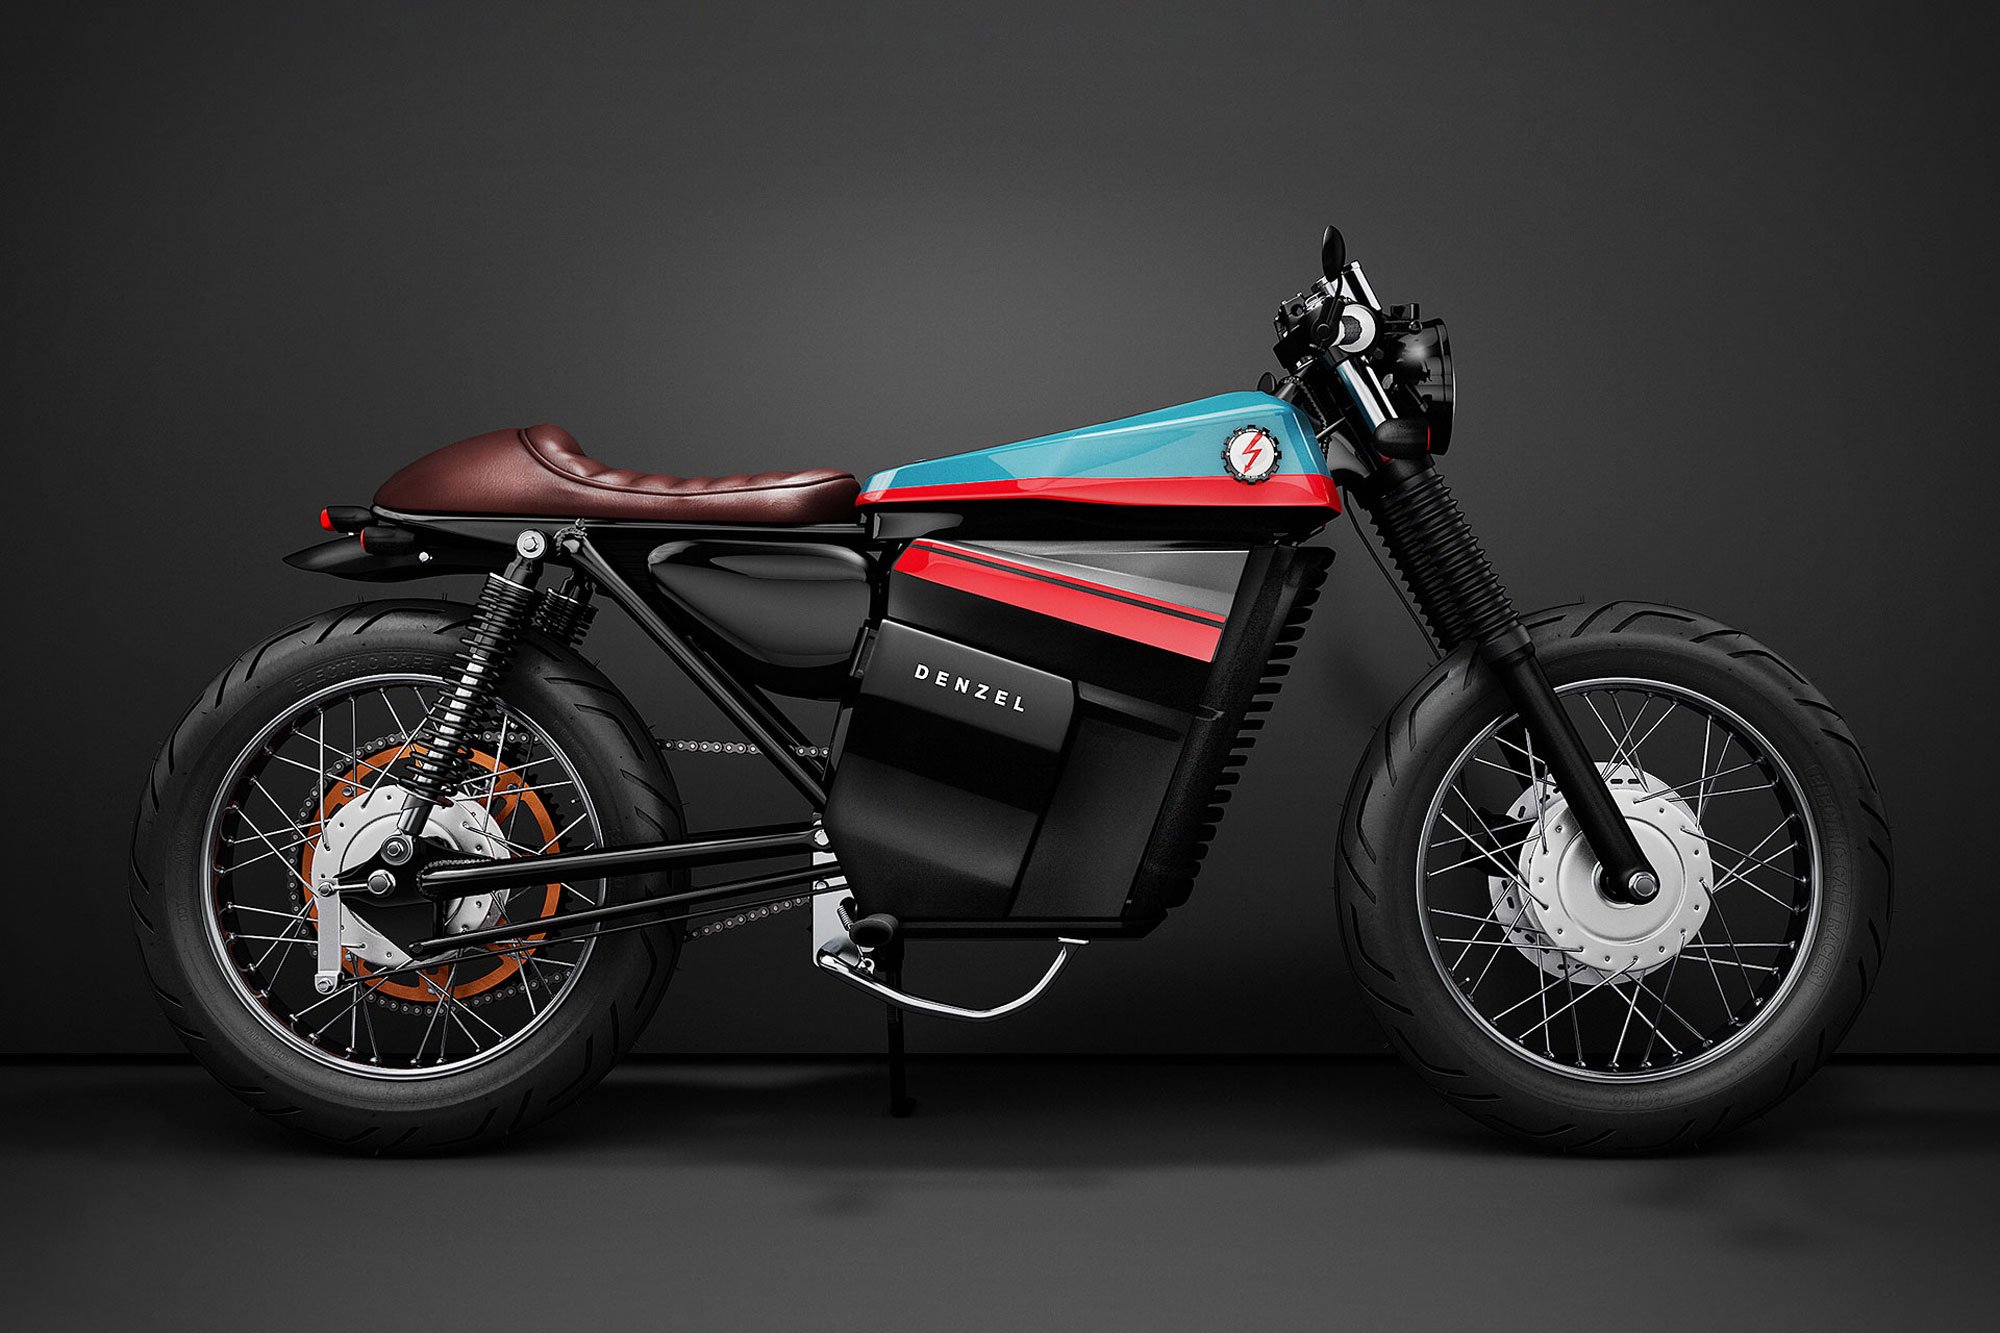 A Honda Electric Cafe Racer Motorcycle Concept - Gessato